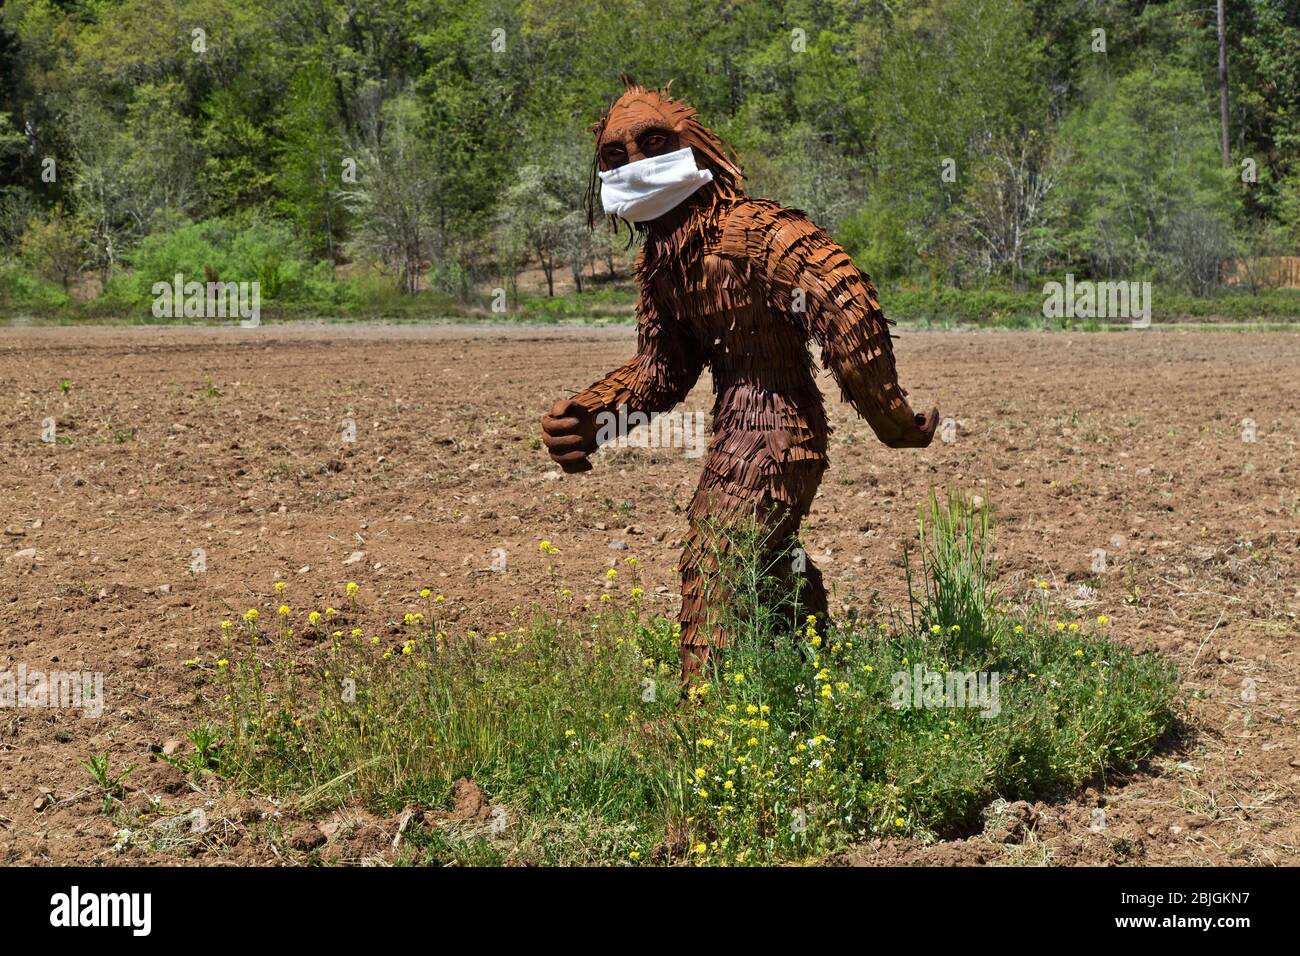 Bigfoot usando máscara antivirus COVID-19, pasando por el campo cultivado, borde del bosque. Foto de stock